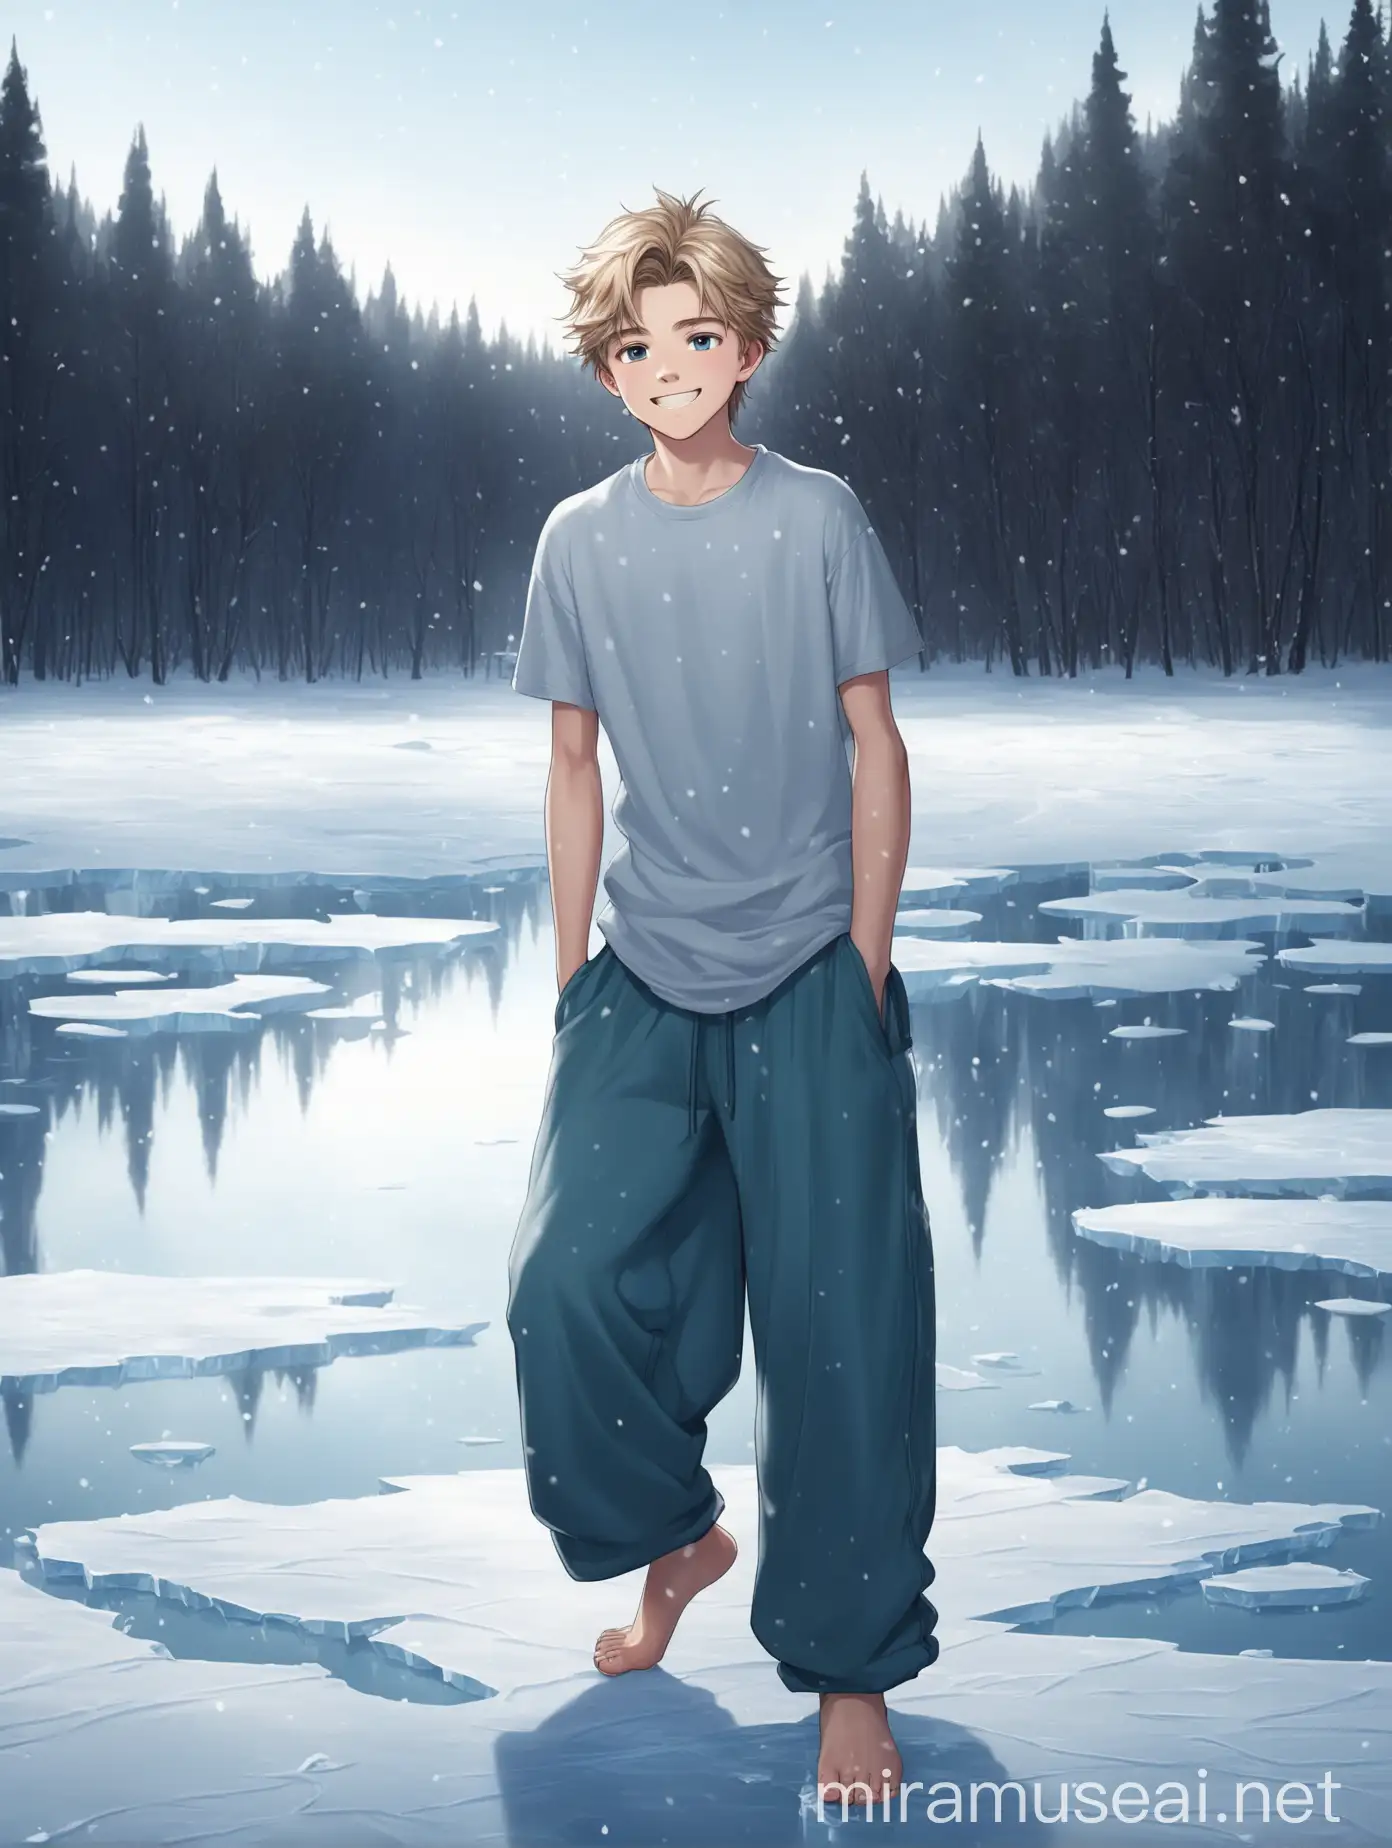 Мальчик 18 лет, светлые волосы, улыбка, босиком, футболка, широкие длинные штаны, босые ноги, снег, лед, замерзшее озеро, зима, лес